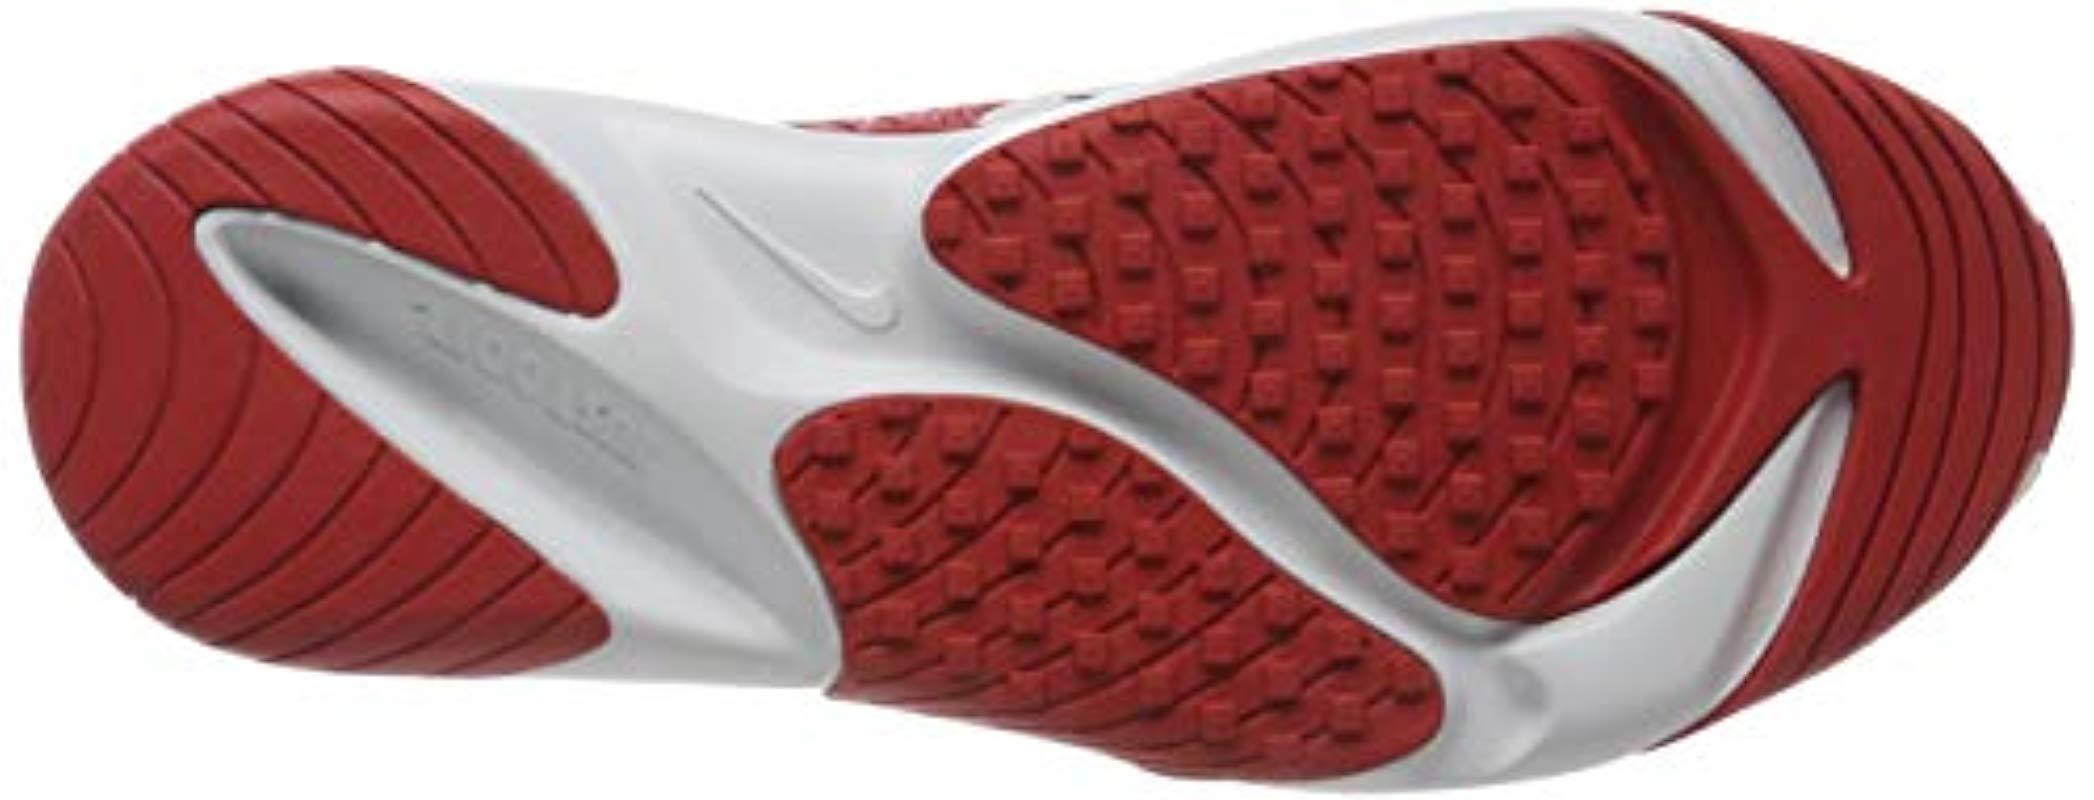 Zapatillas de deporte rojas Zoom 2K Nike de hombre de color Rojo | Lyst